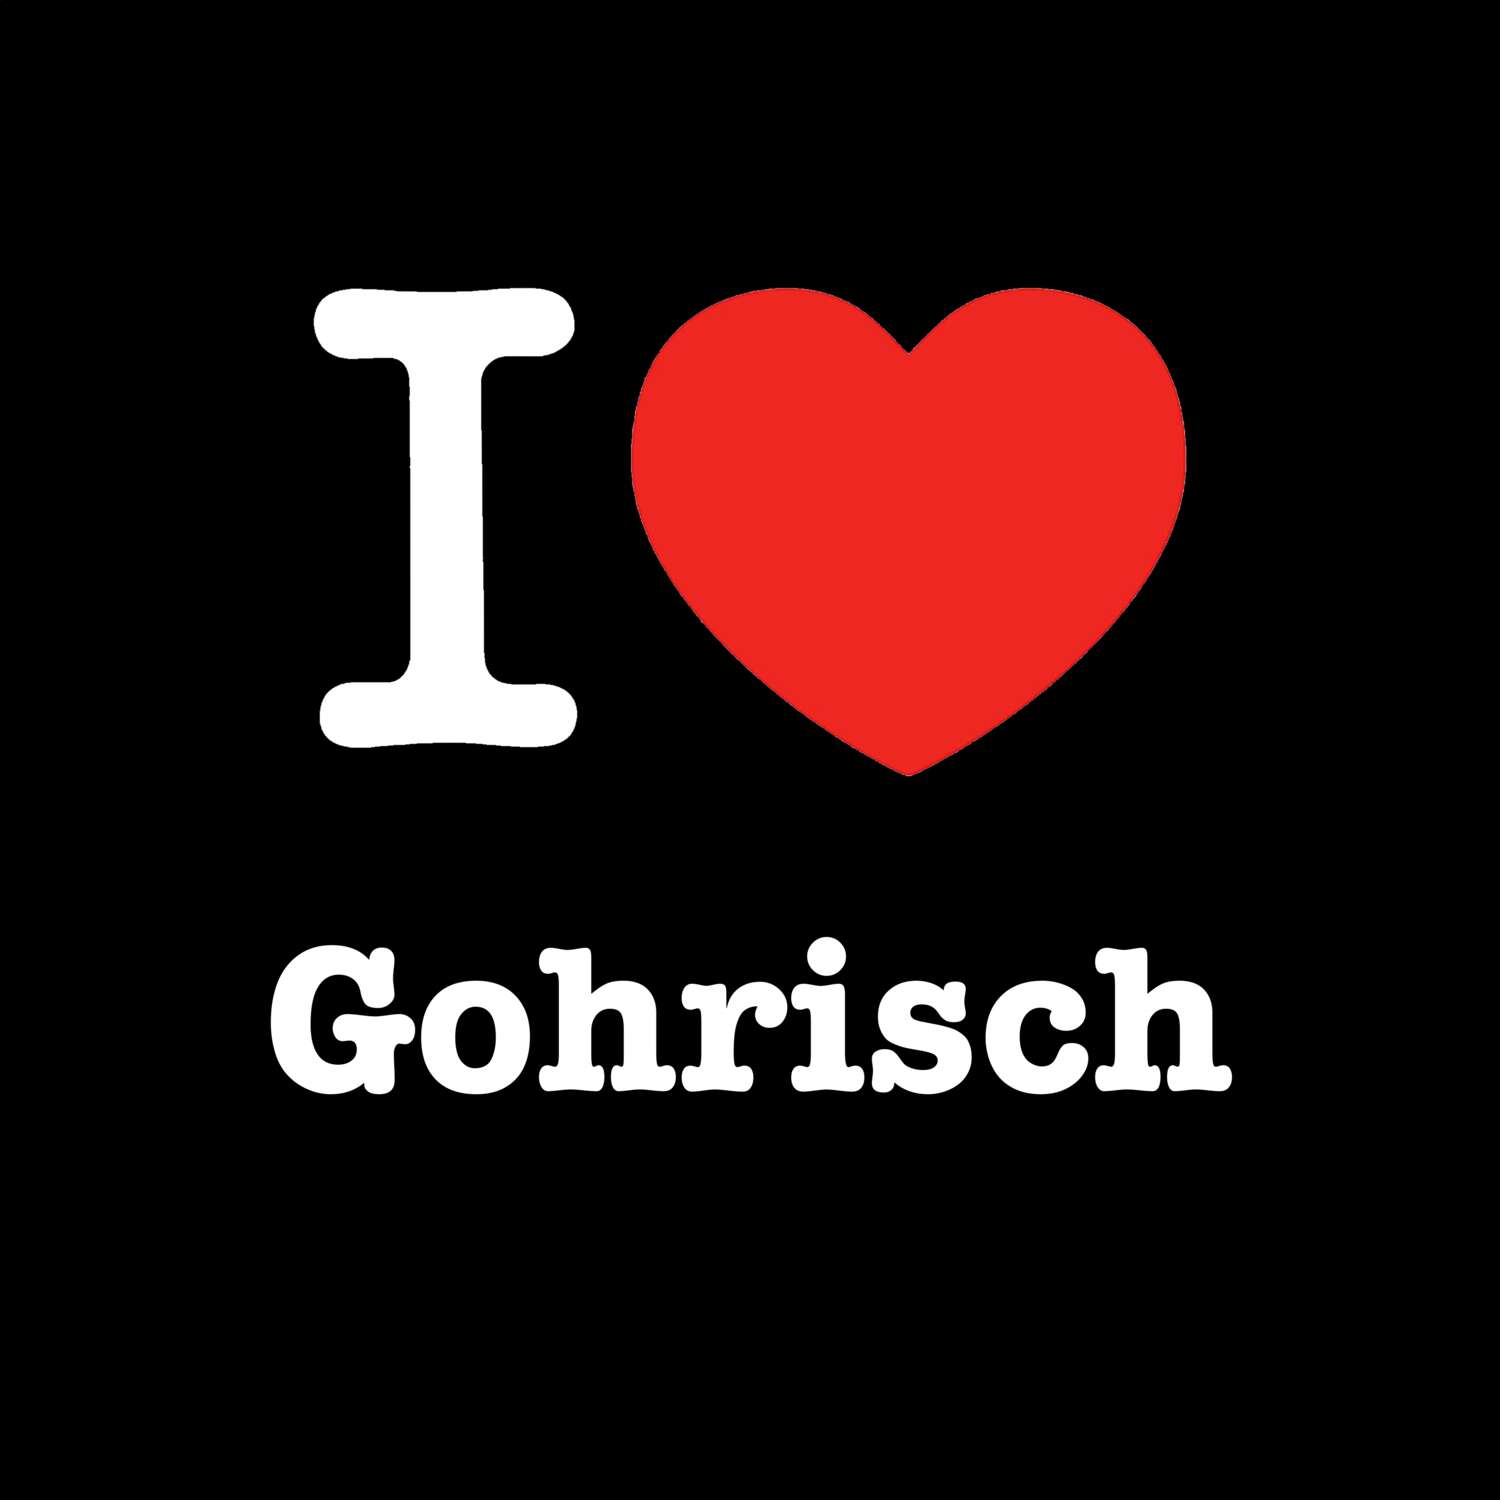 Gohrisch T-Shirt »I love«